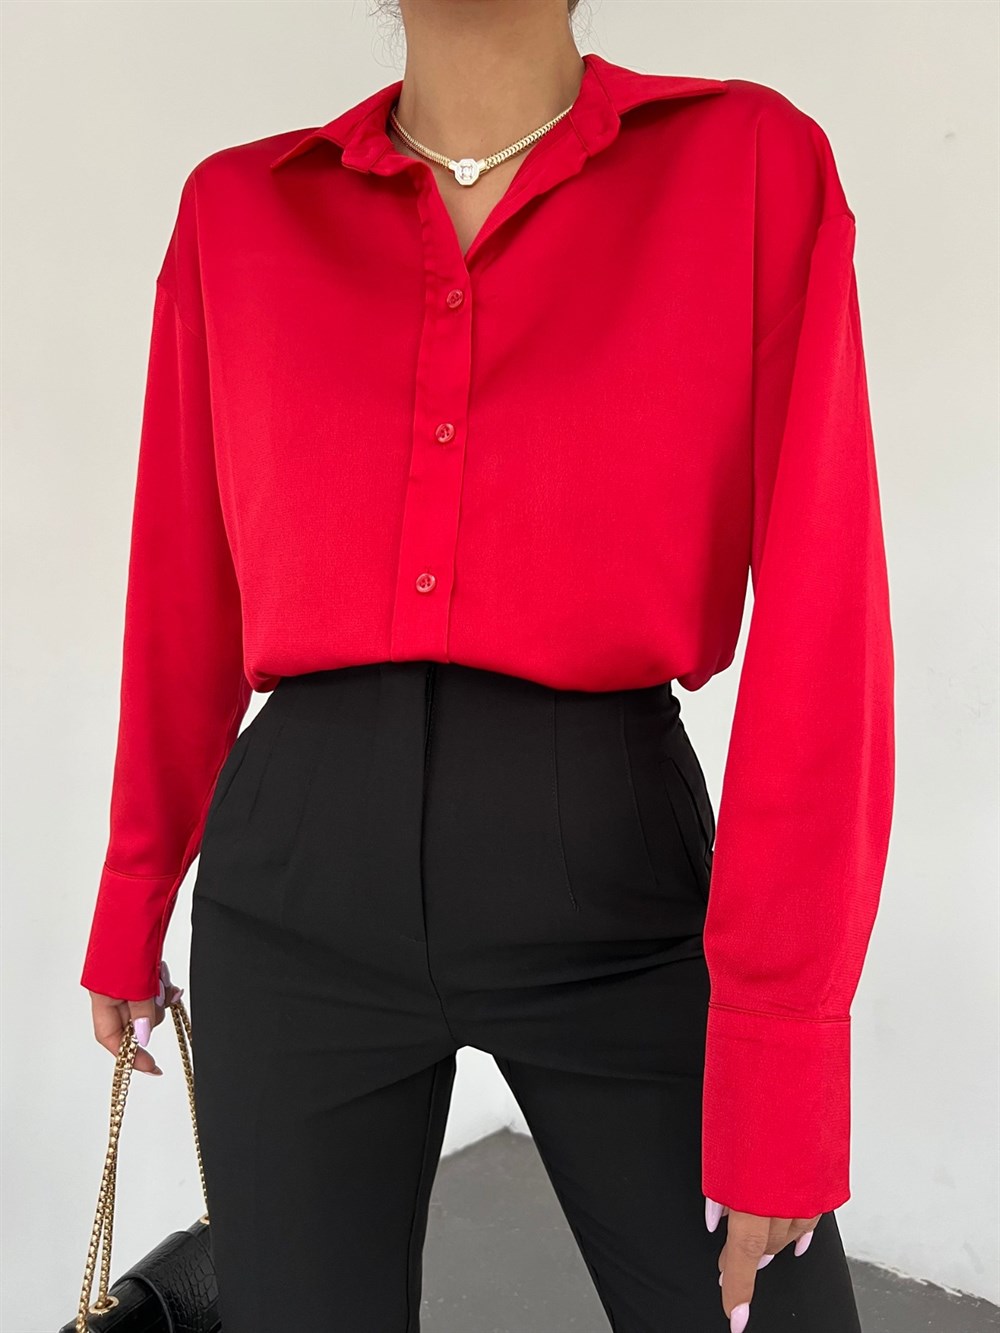 Boydan Düğmeli Oval Kesim Saten Gömlek -Kırmızı - 123-1697-R33 | ZERDE  Marka Gömlek Modelleri | Kadın Tesettür Giyim - KaliteMall.com